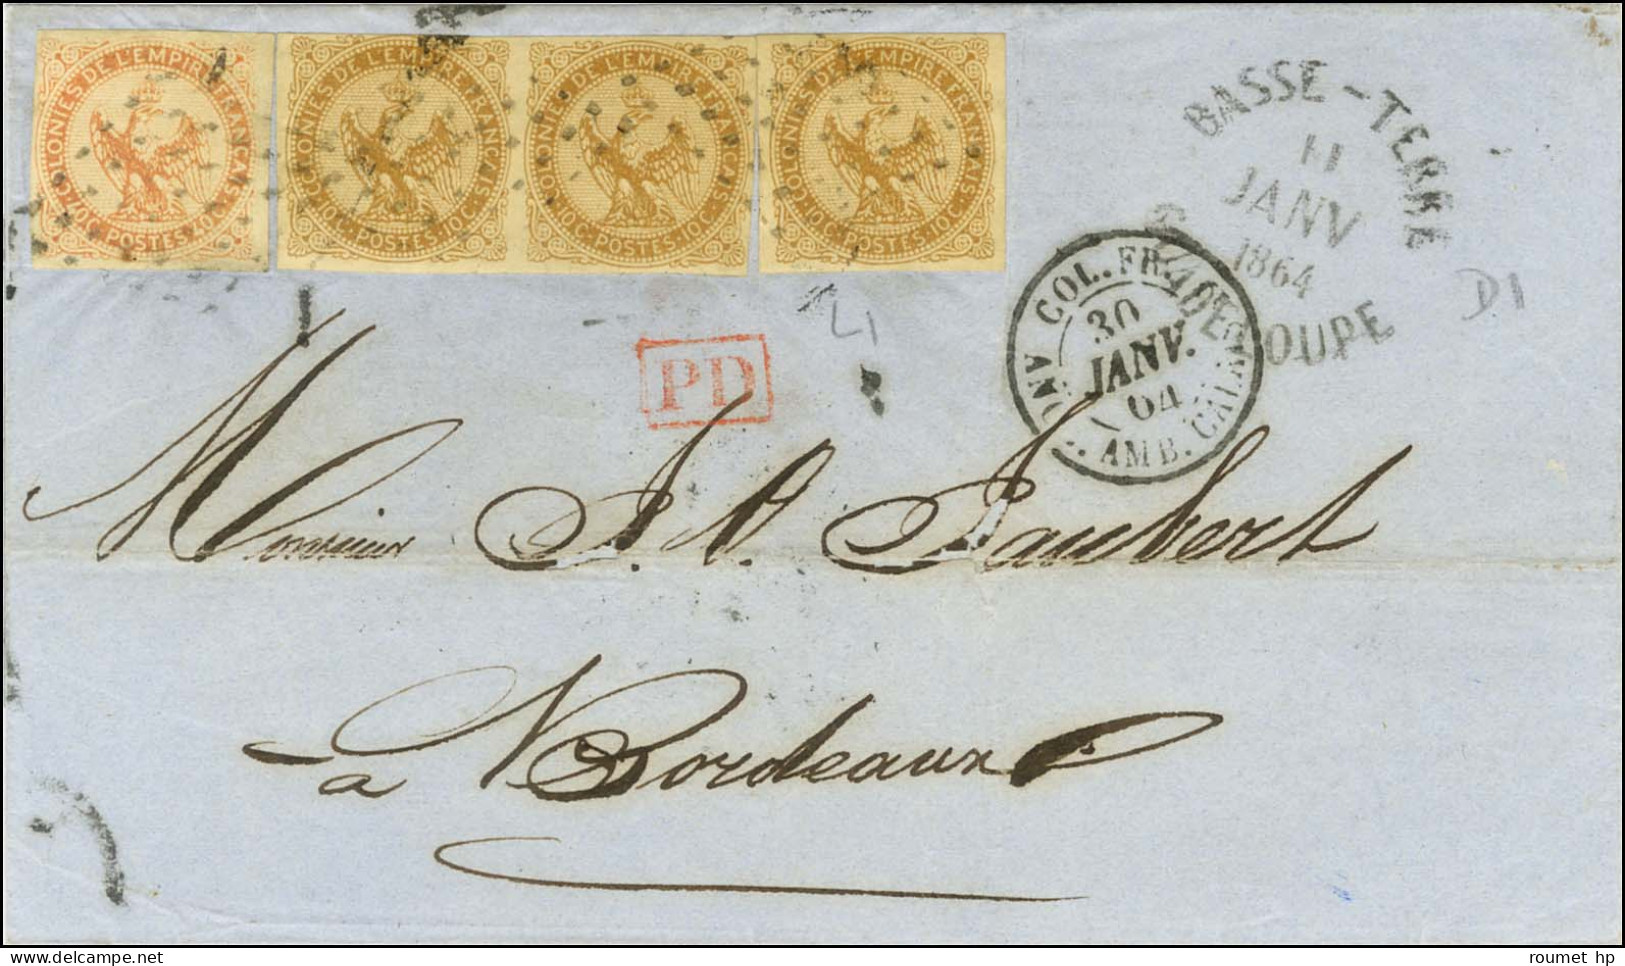 Losange / Col. Gen. N° 3 Paire + 1 Ex + 5 Càd BASSE TERRE / GUADELOUPE Sur Lettre Pour Bordeaux. 1864. - TB / SUP. - R. - Maritime Post